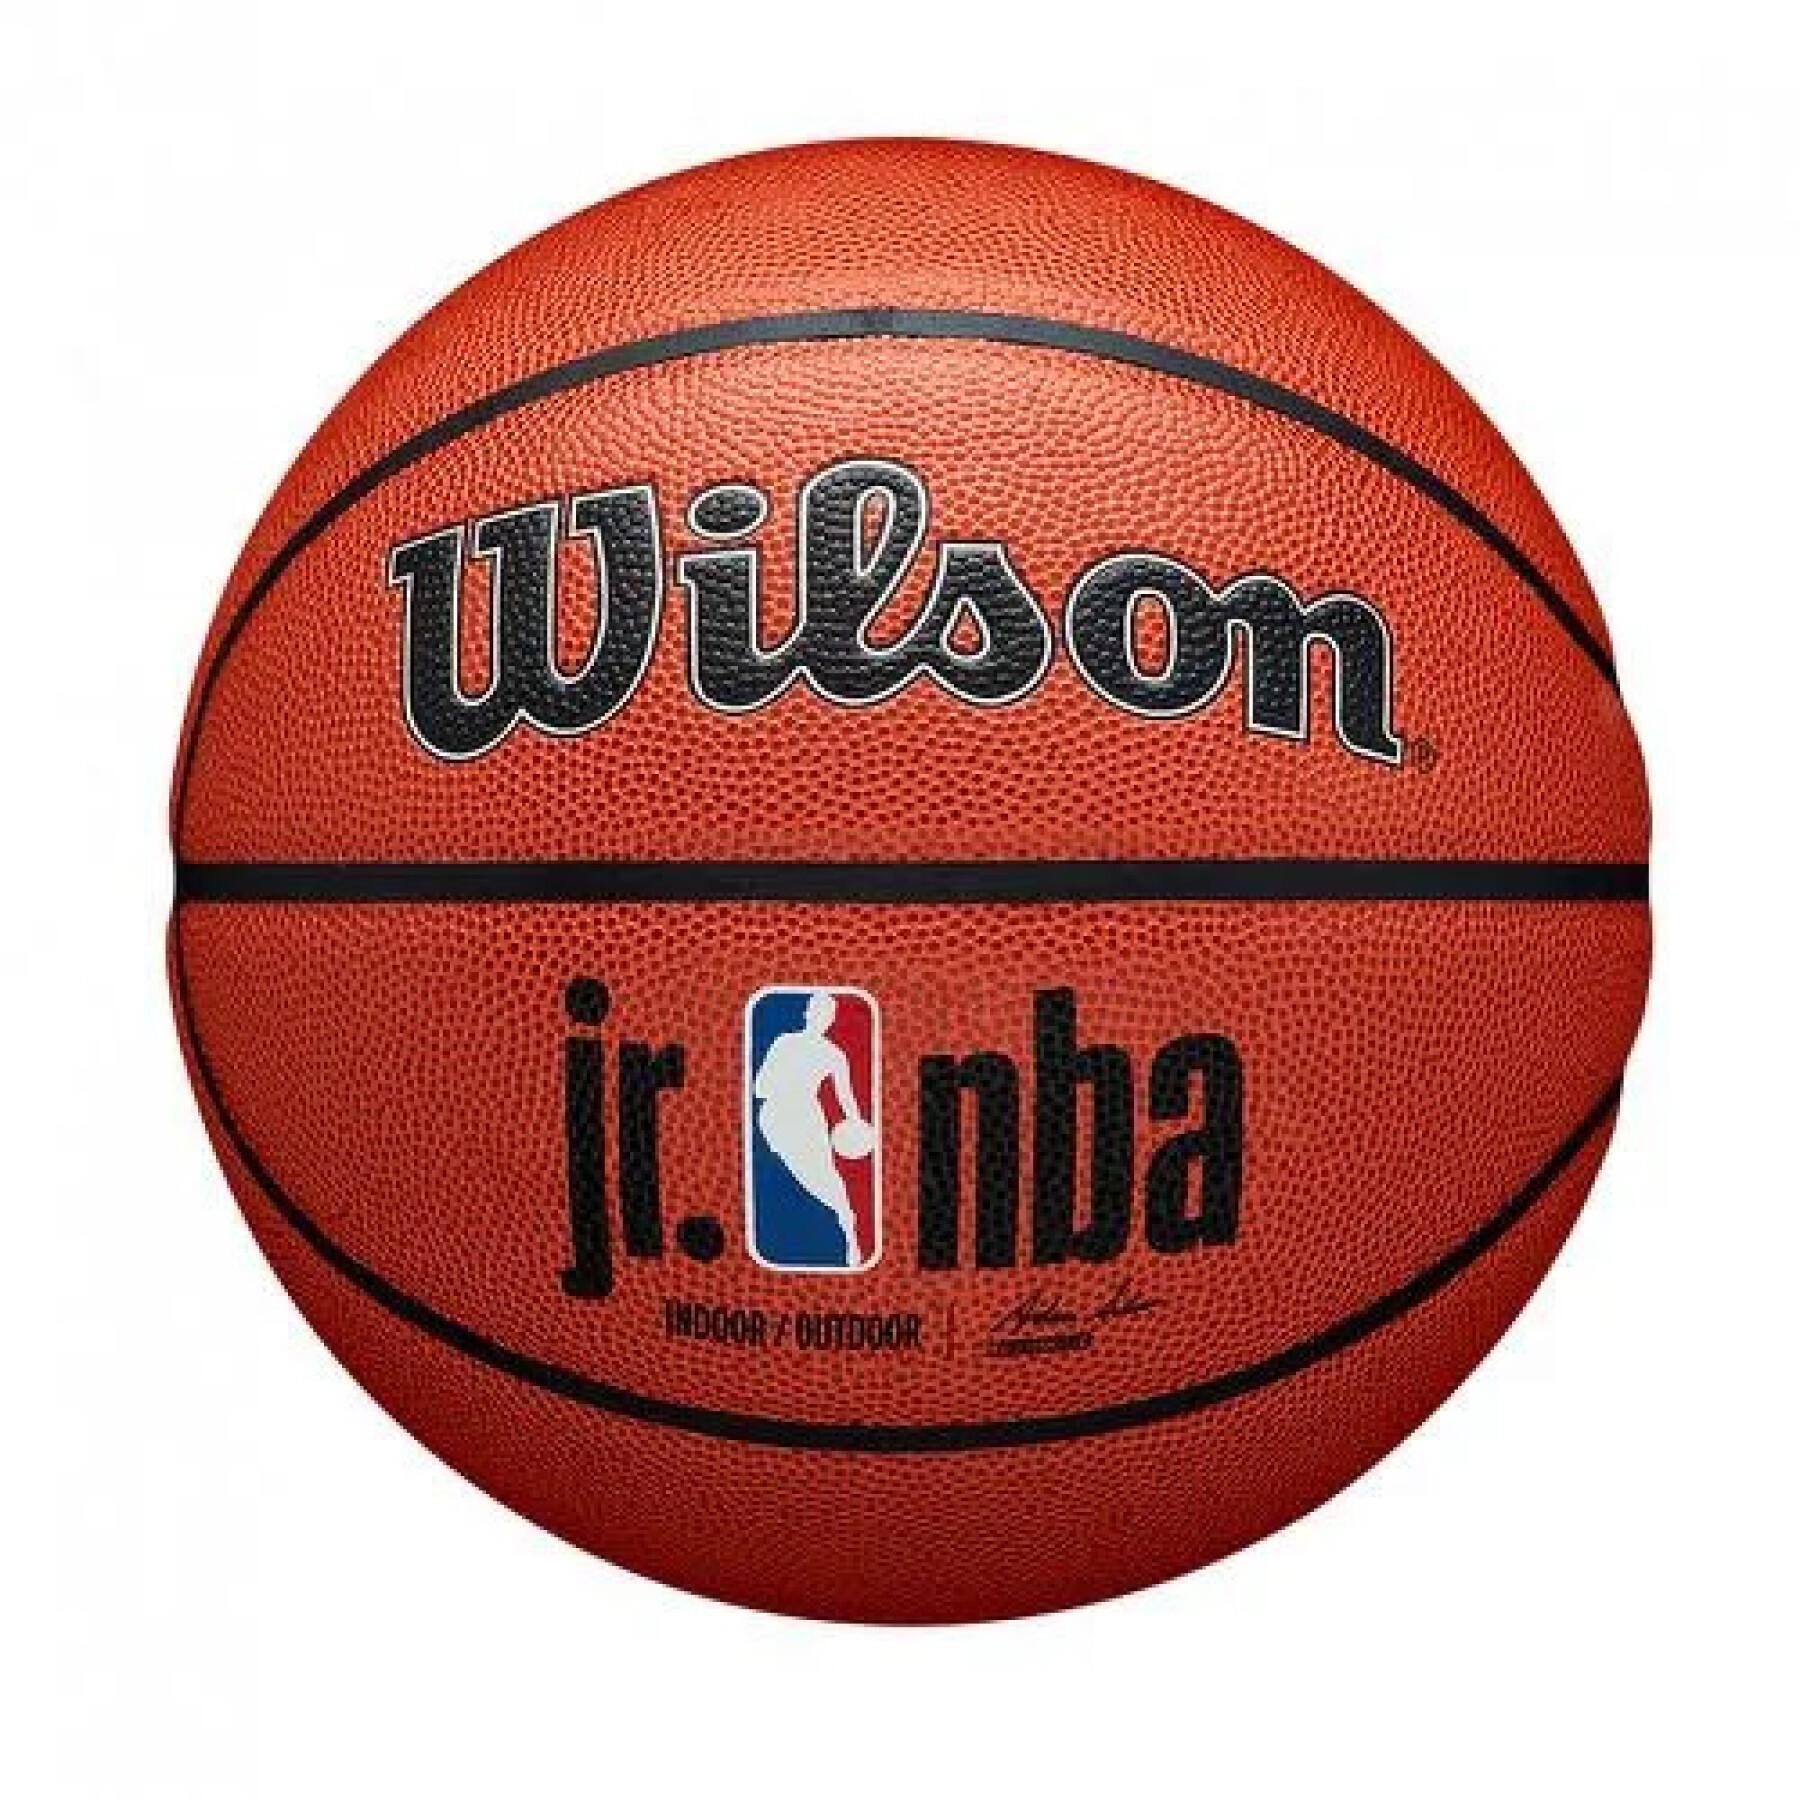 Ballong Wilson JR NBA Authentic Indoor/outdoor